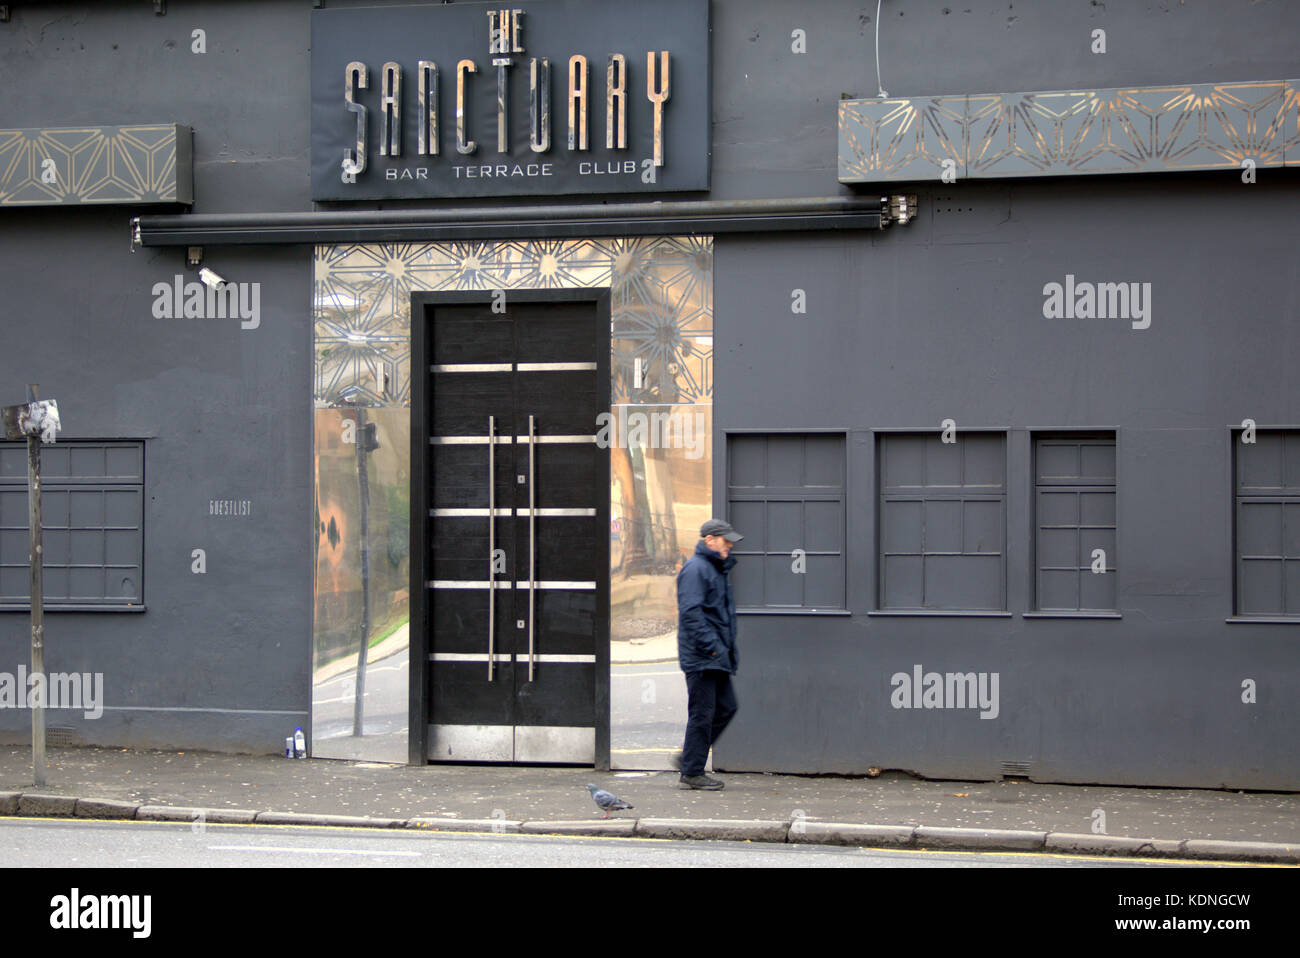 Le sanctuaire est un bar et une discothèque dans le quartier West End de Glasgow. notoire pour les événements d'importance majeure sur la route dunbarton, partick Glasgow Banque D'Images